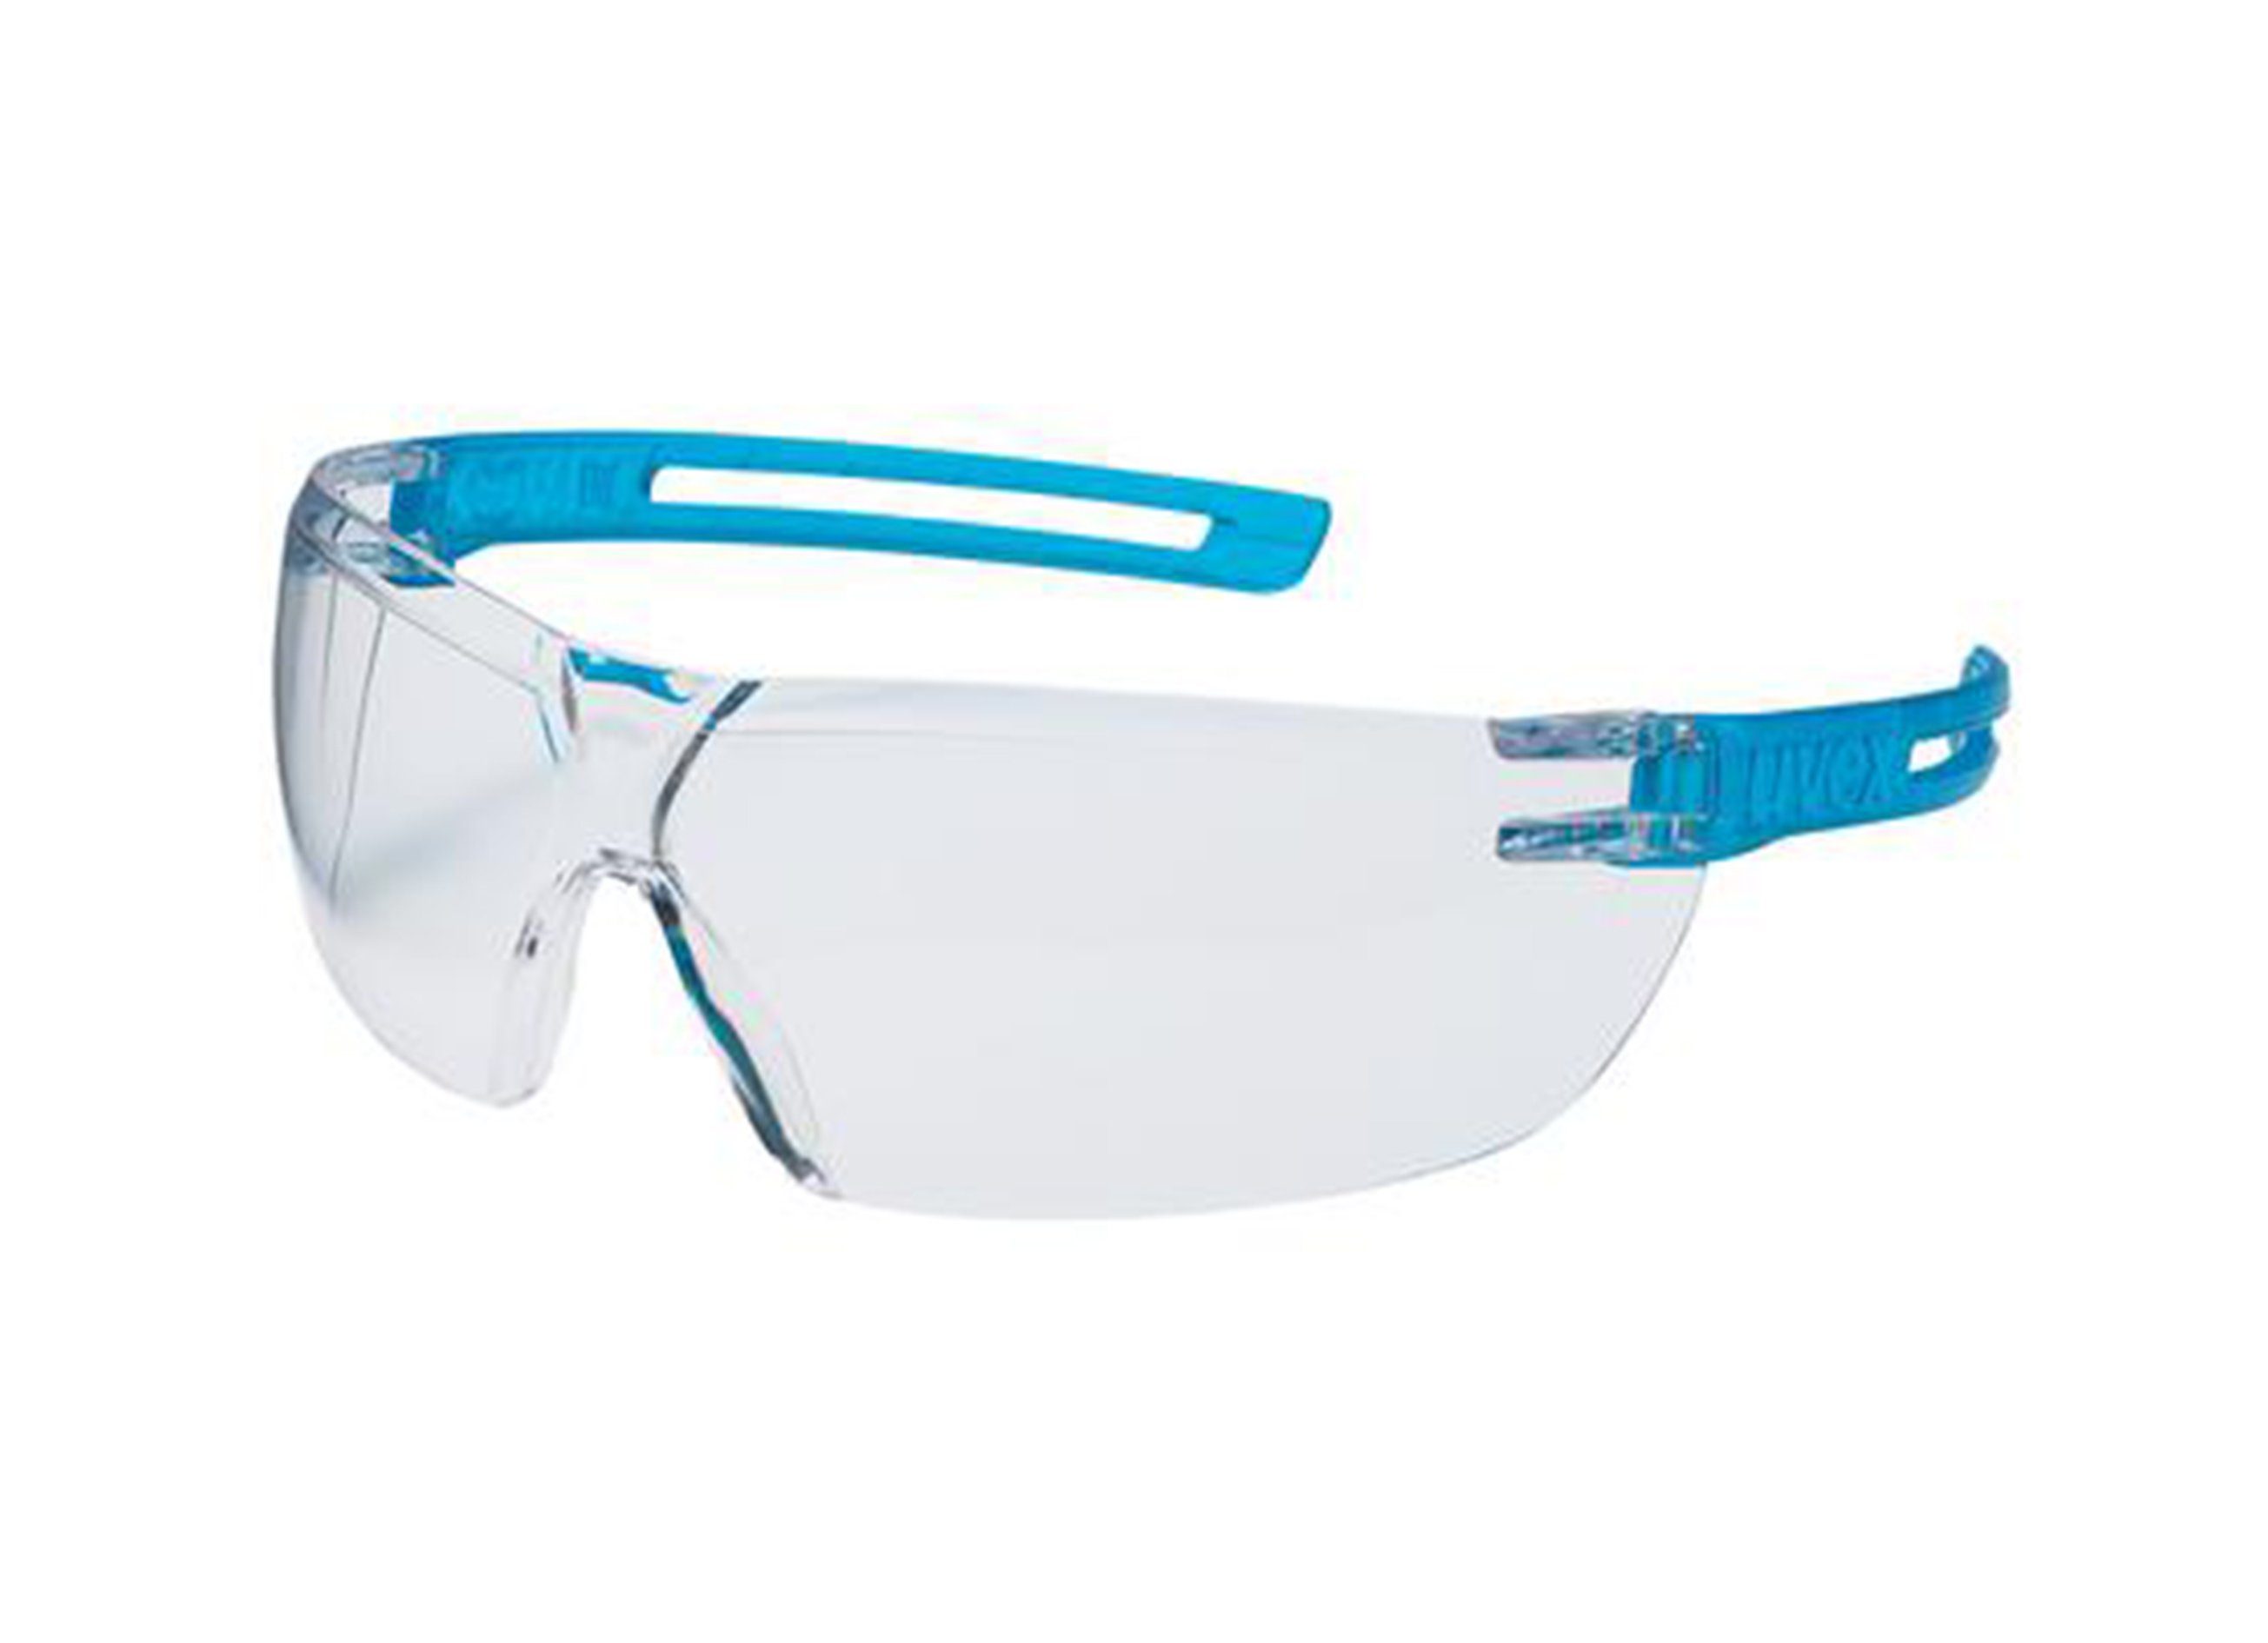 blau Gewicht Uvex Bügelbrille x-fit Brille innen g extrem 23 außen uvex beschlagfrei, nur kratzfest,